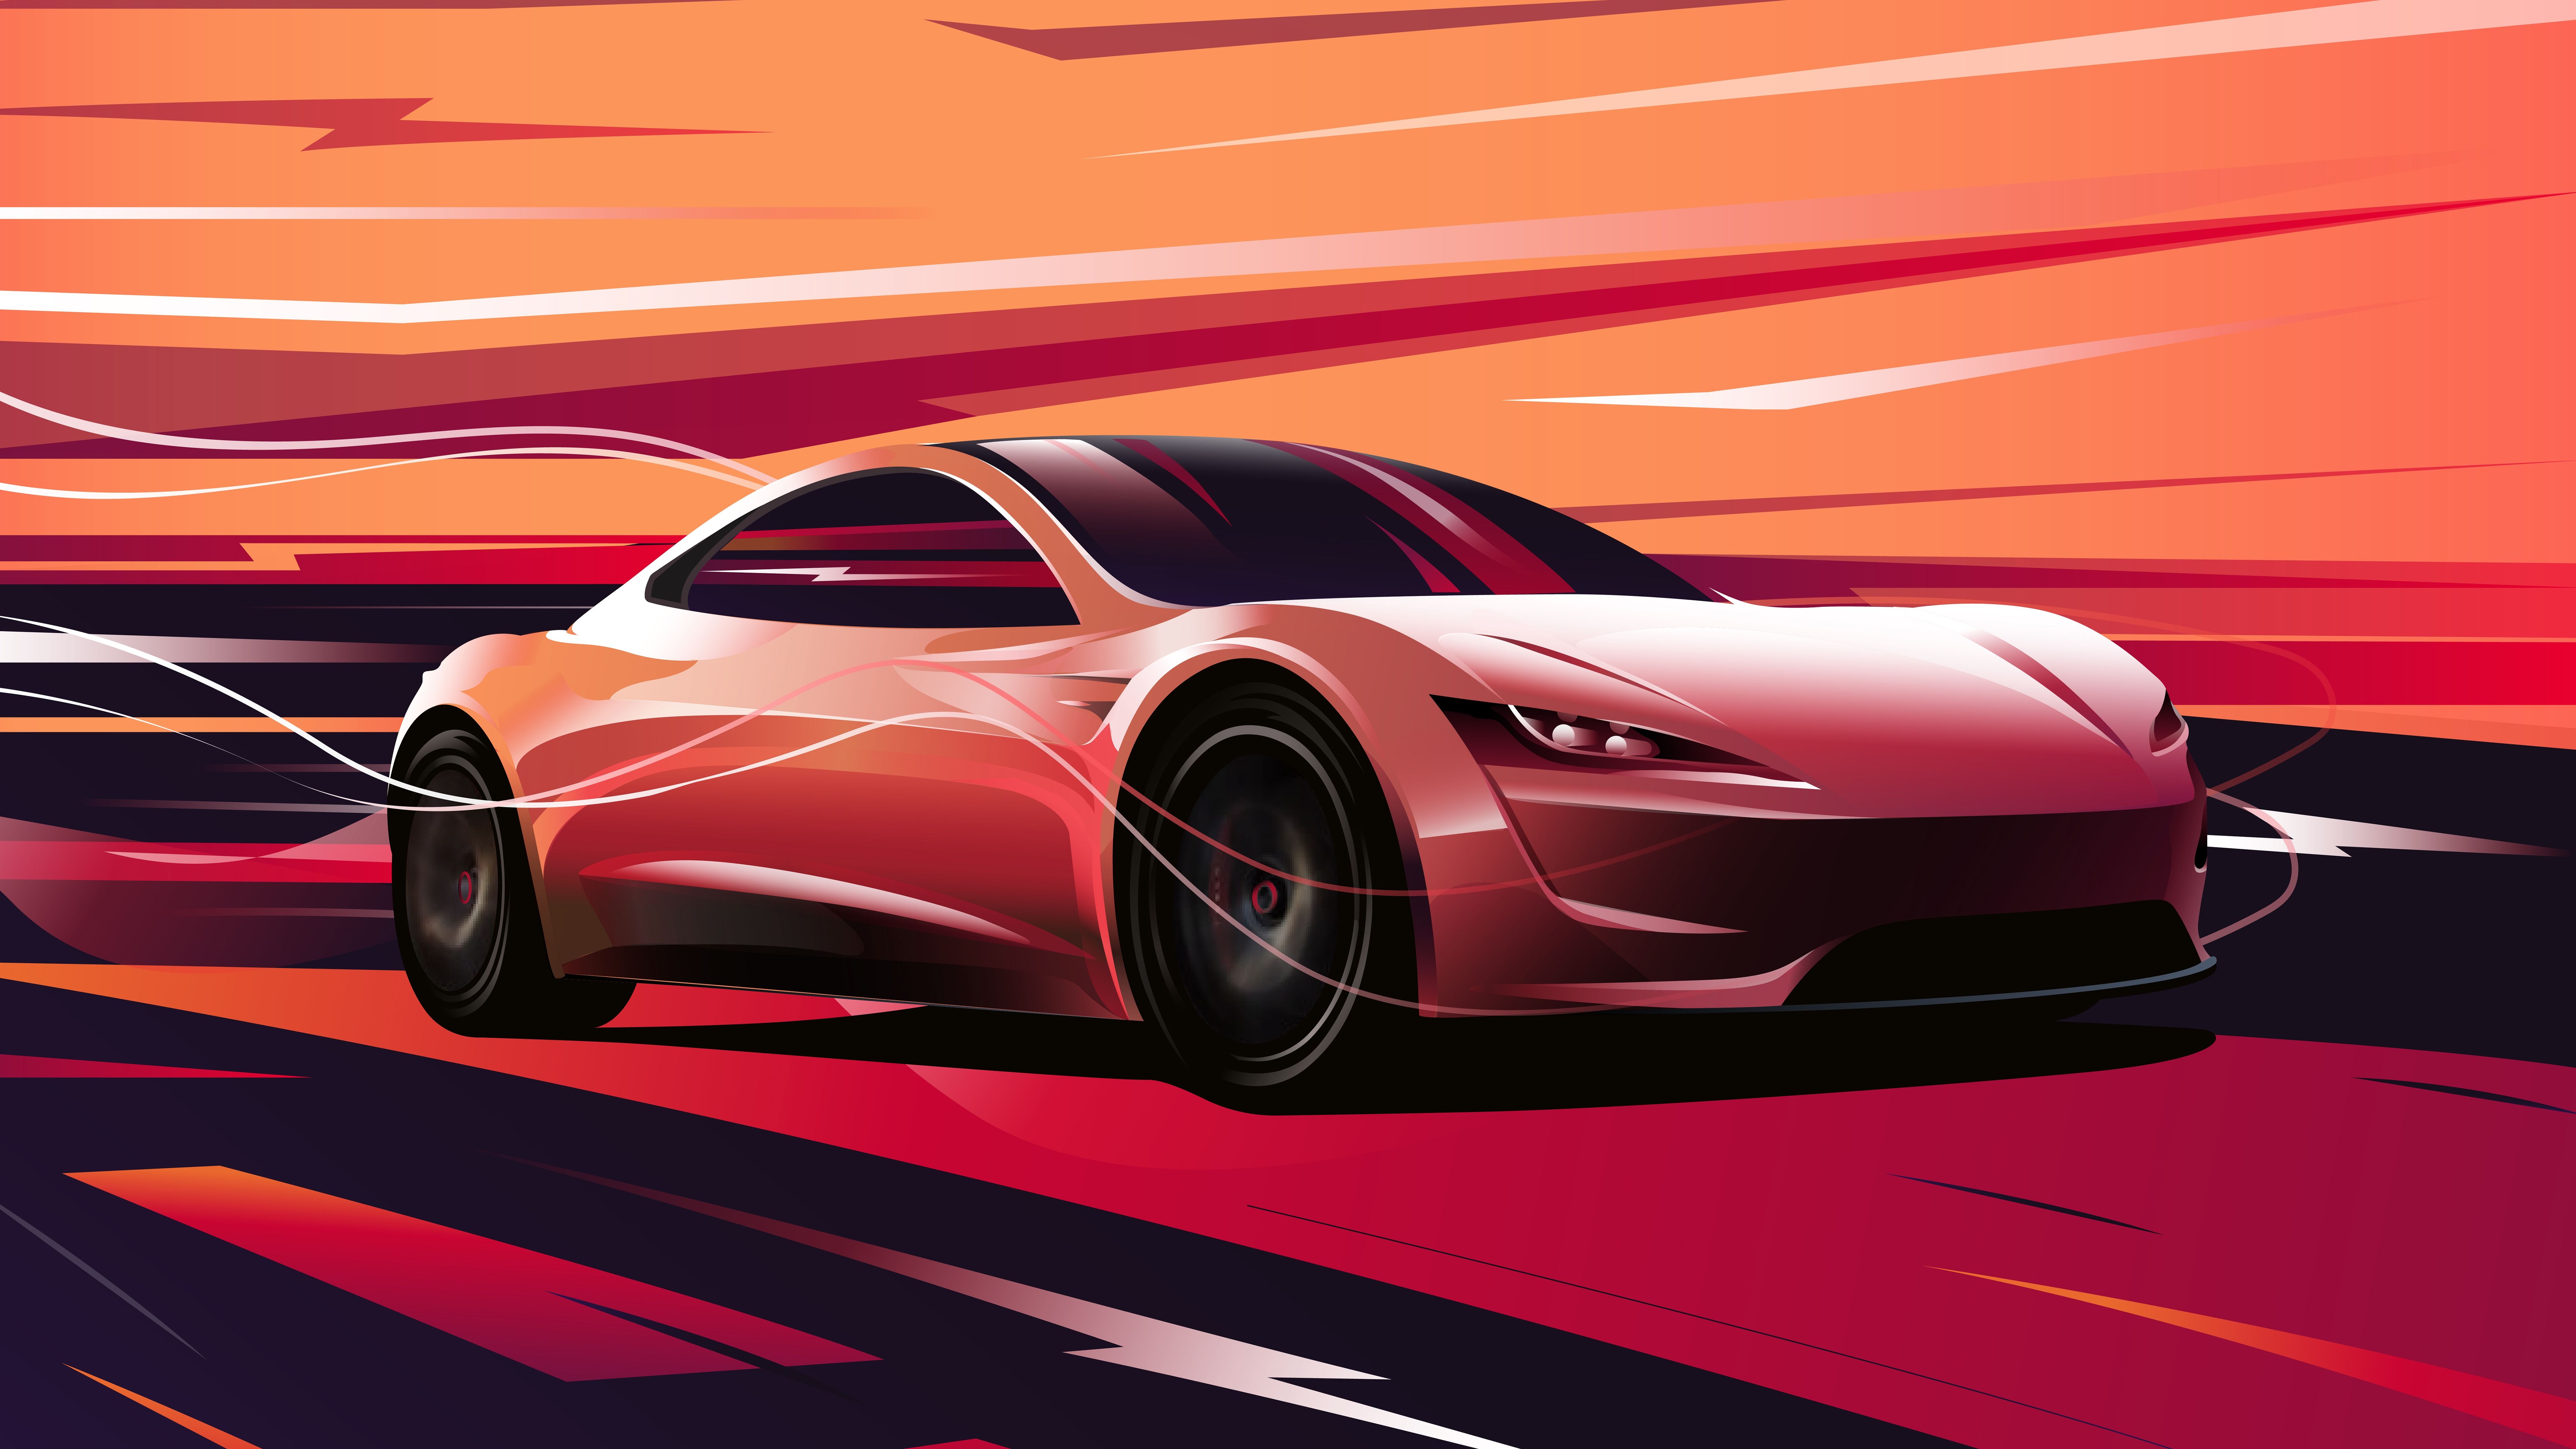 Tesla Roadster Wallpaper On